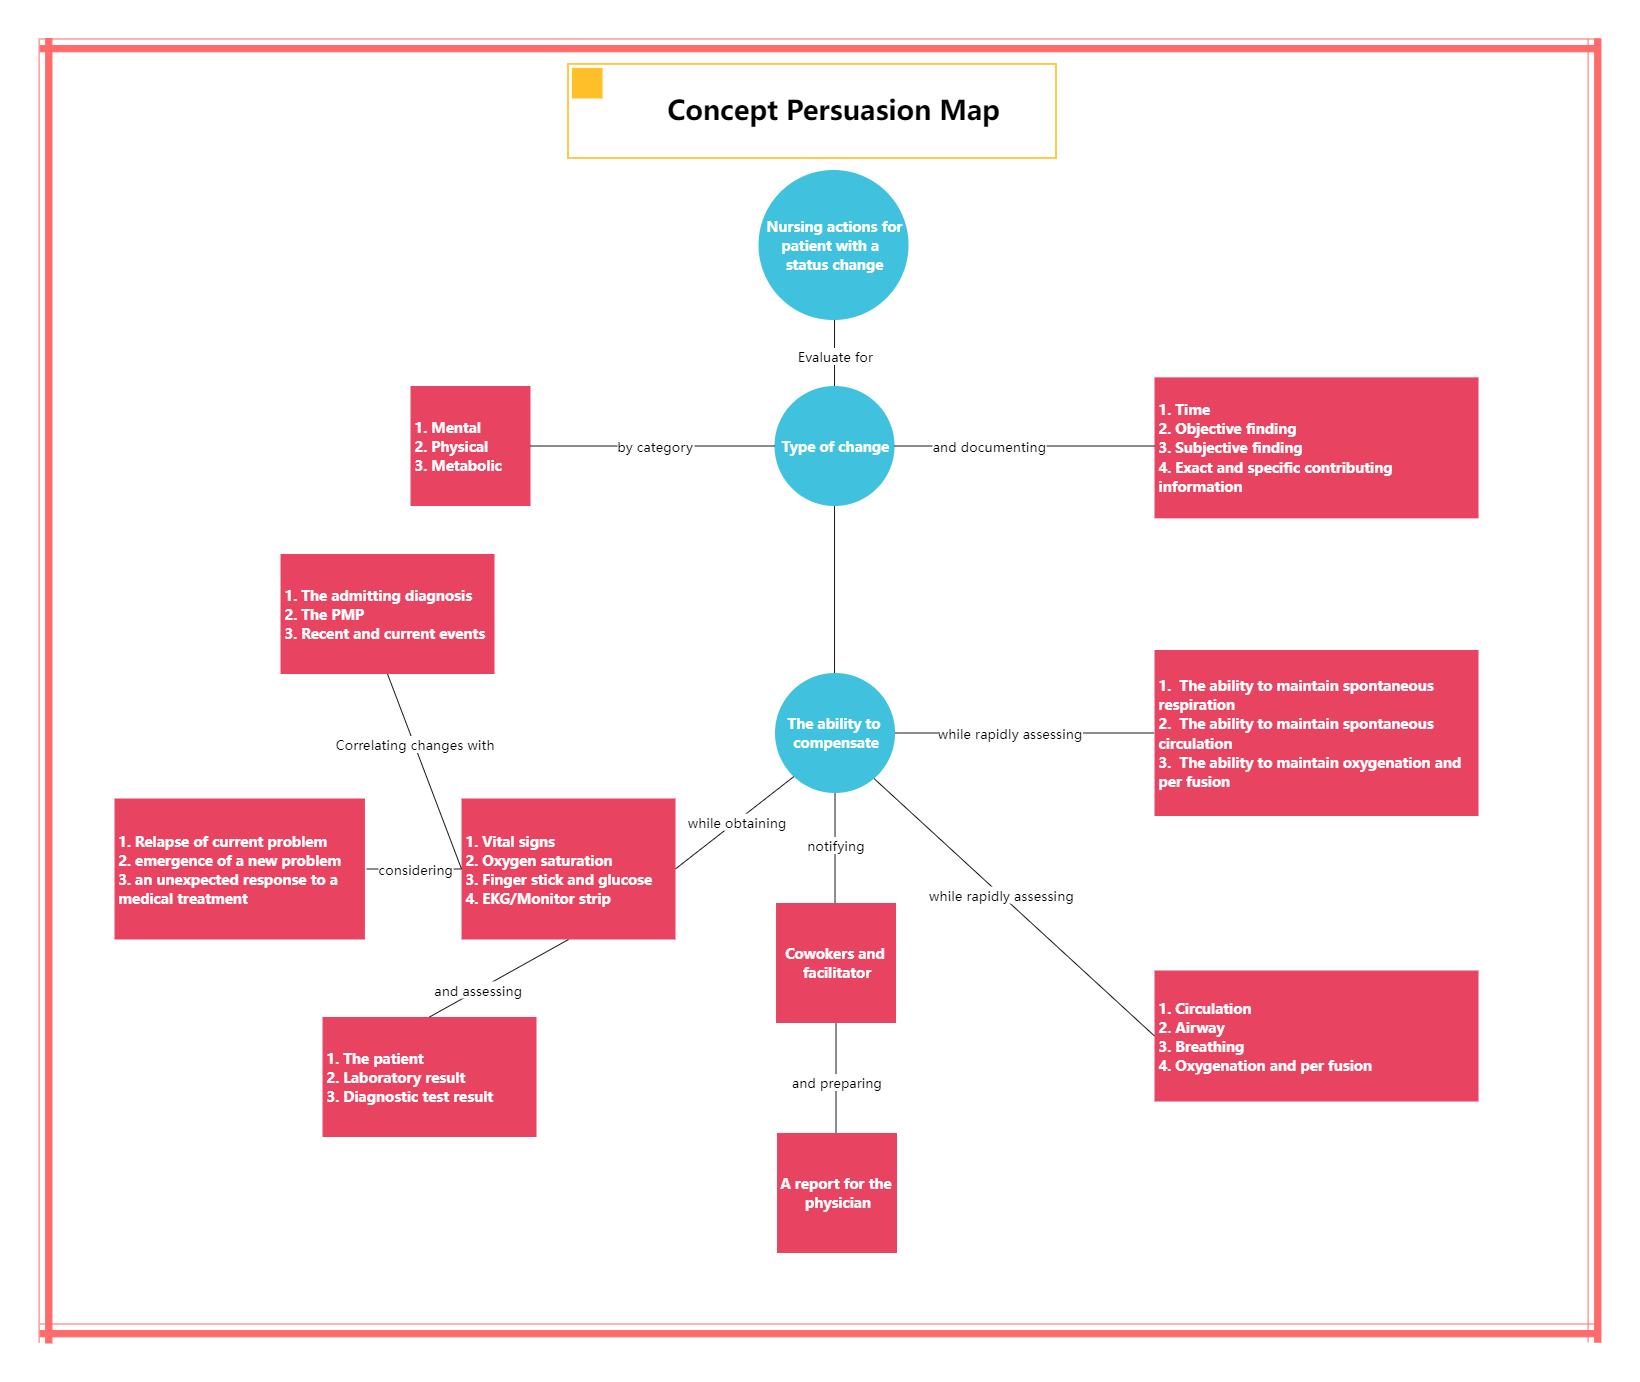 Concept Persuasion Map